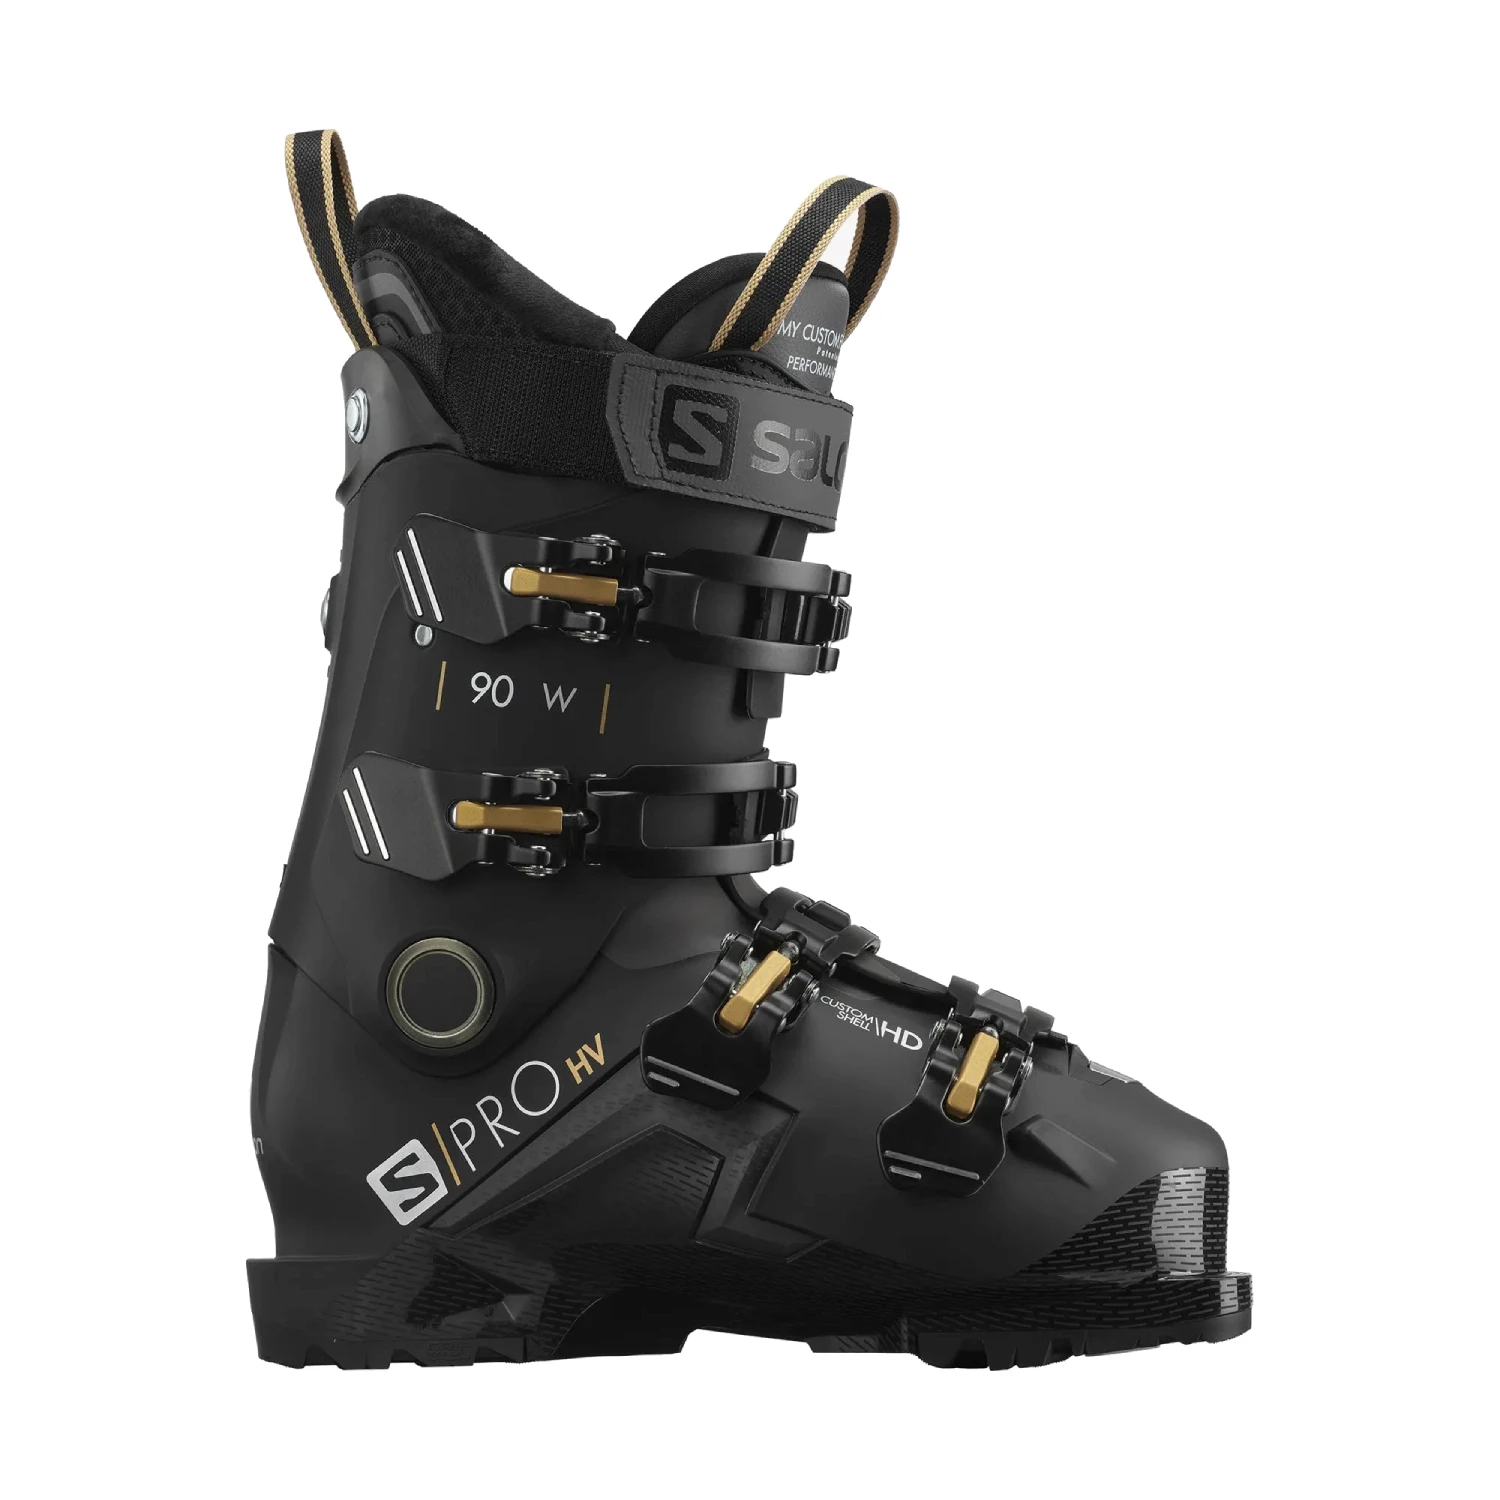 Salomon S-Pro HV 90 W skischoenen dames